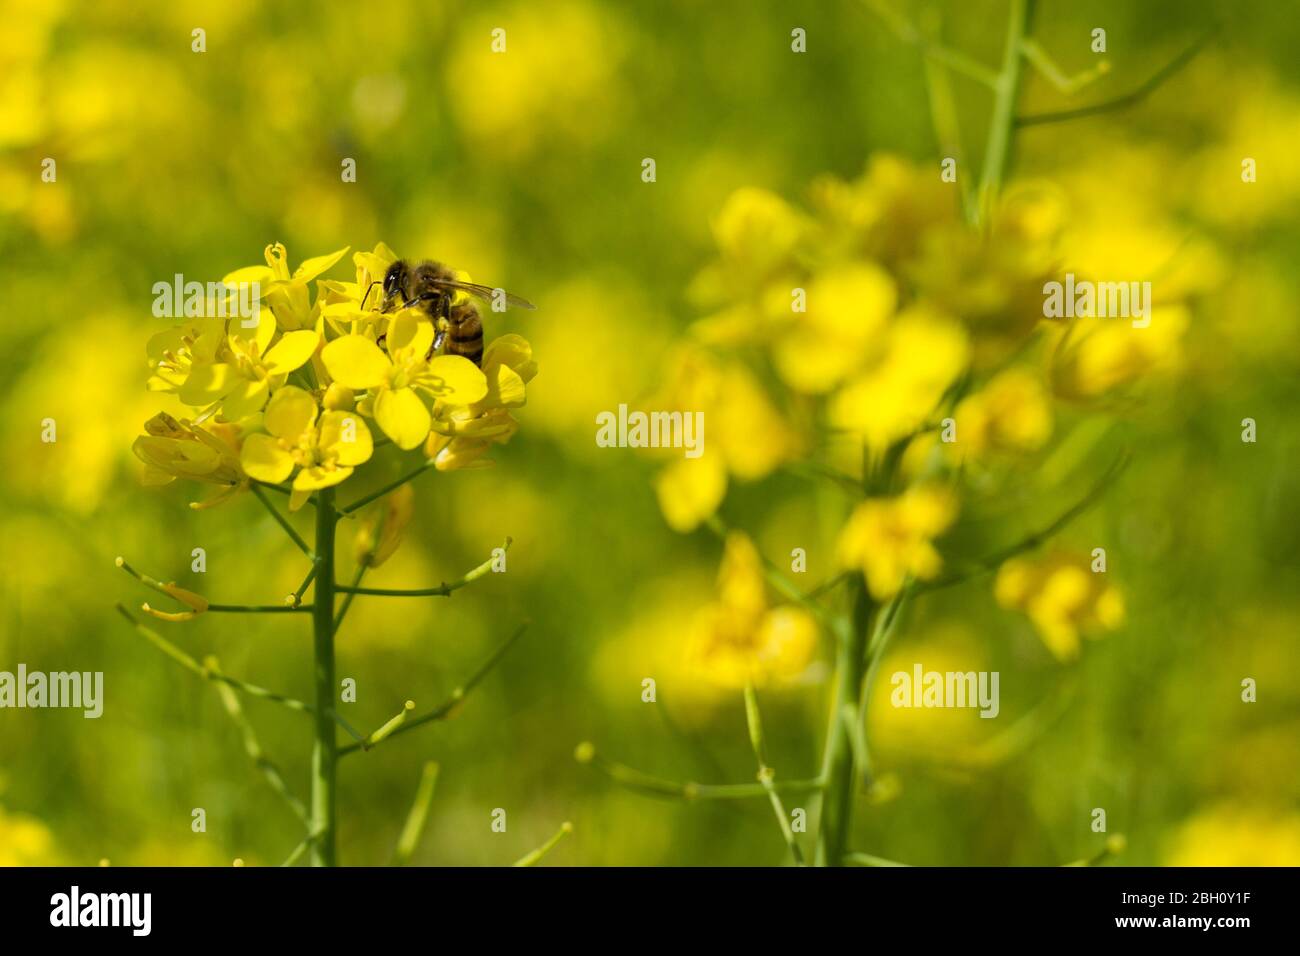 Gros plan de l'abeille qui recueille le nectar et le pollen de la plante de brocoli un jour au printemps. Le miel est un insecte qui fonctionne dur Banque D'Images